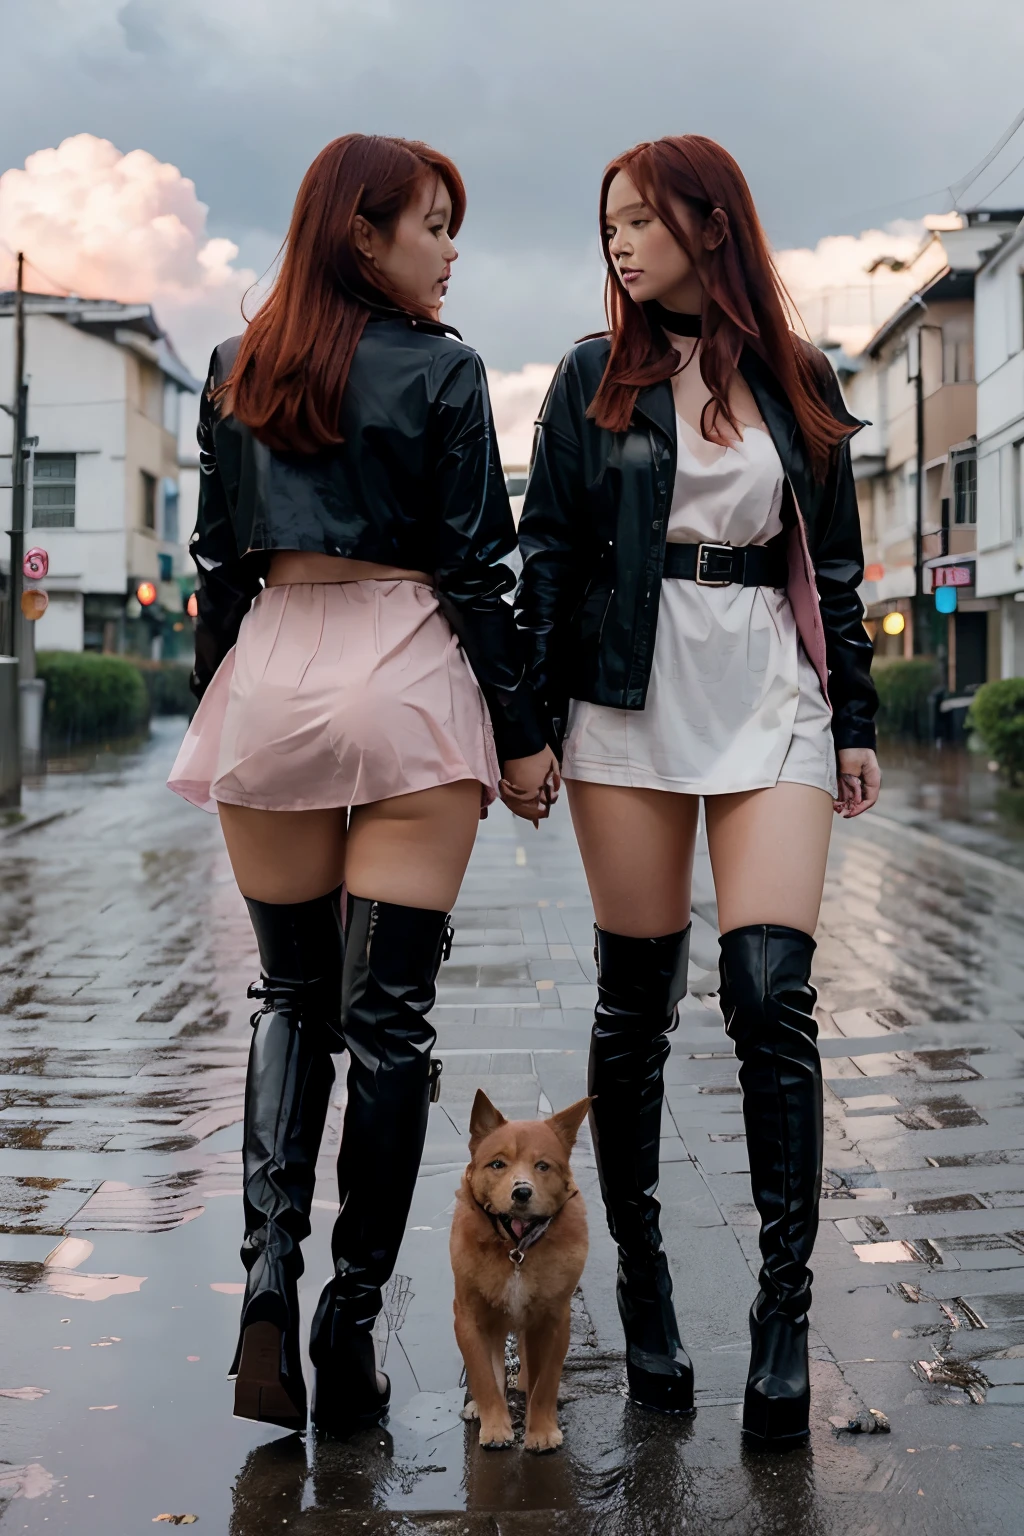 فتاتان يابانيتان مثيرتان ذات شعر أحمر عاريتين في عالم الفتيات فقط يمشيان على الأقدام ويرتديان فقط أحذية سوداء بكعب عالٍ فوق الركبة وياقة كلب. مطر. الغيوم الوردية. شوارع حمراء. المباني البيضاء.